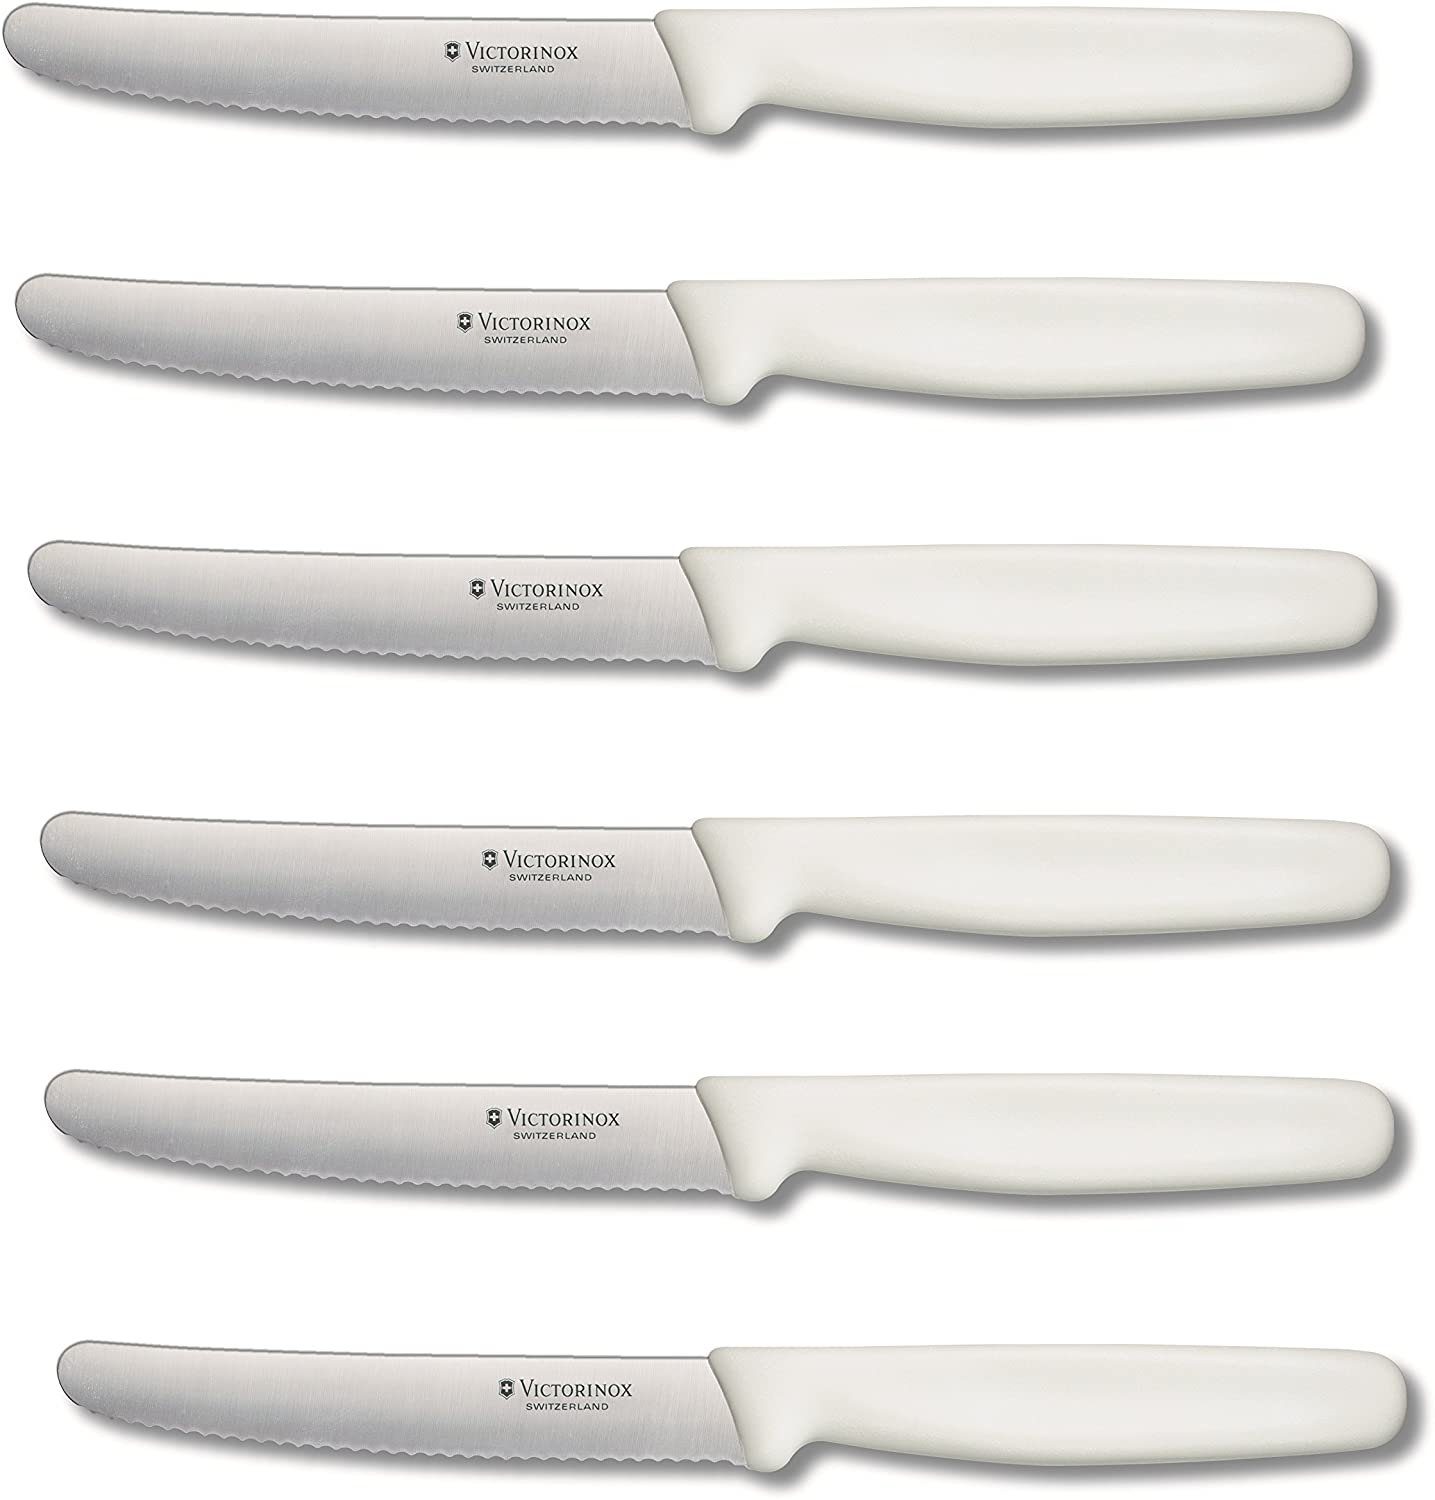 6 Stück Tafelmesser Steakmesser Brötchenmesser Brotzeitmesser Messer Victorinox 